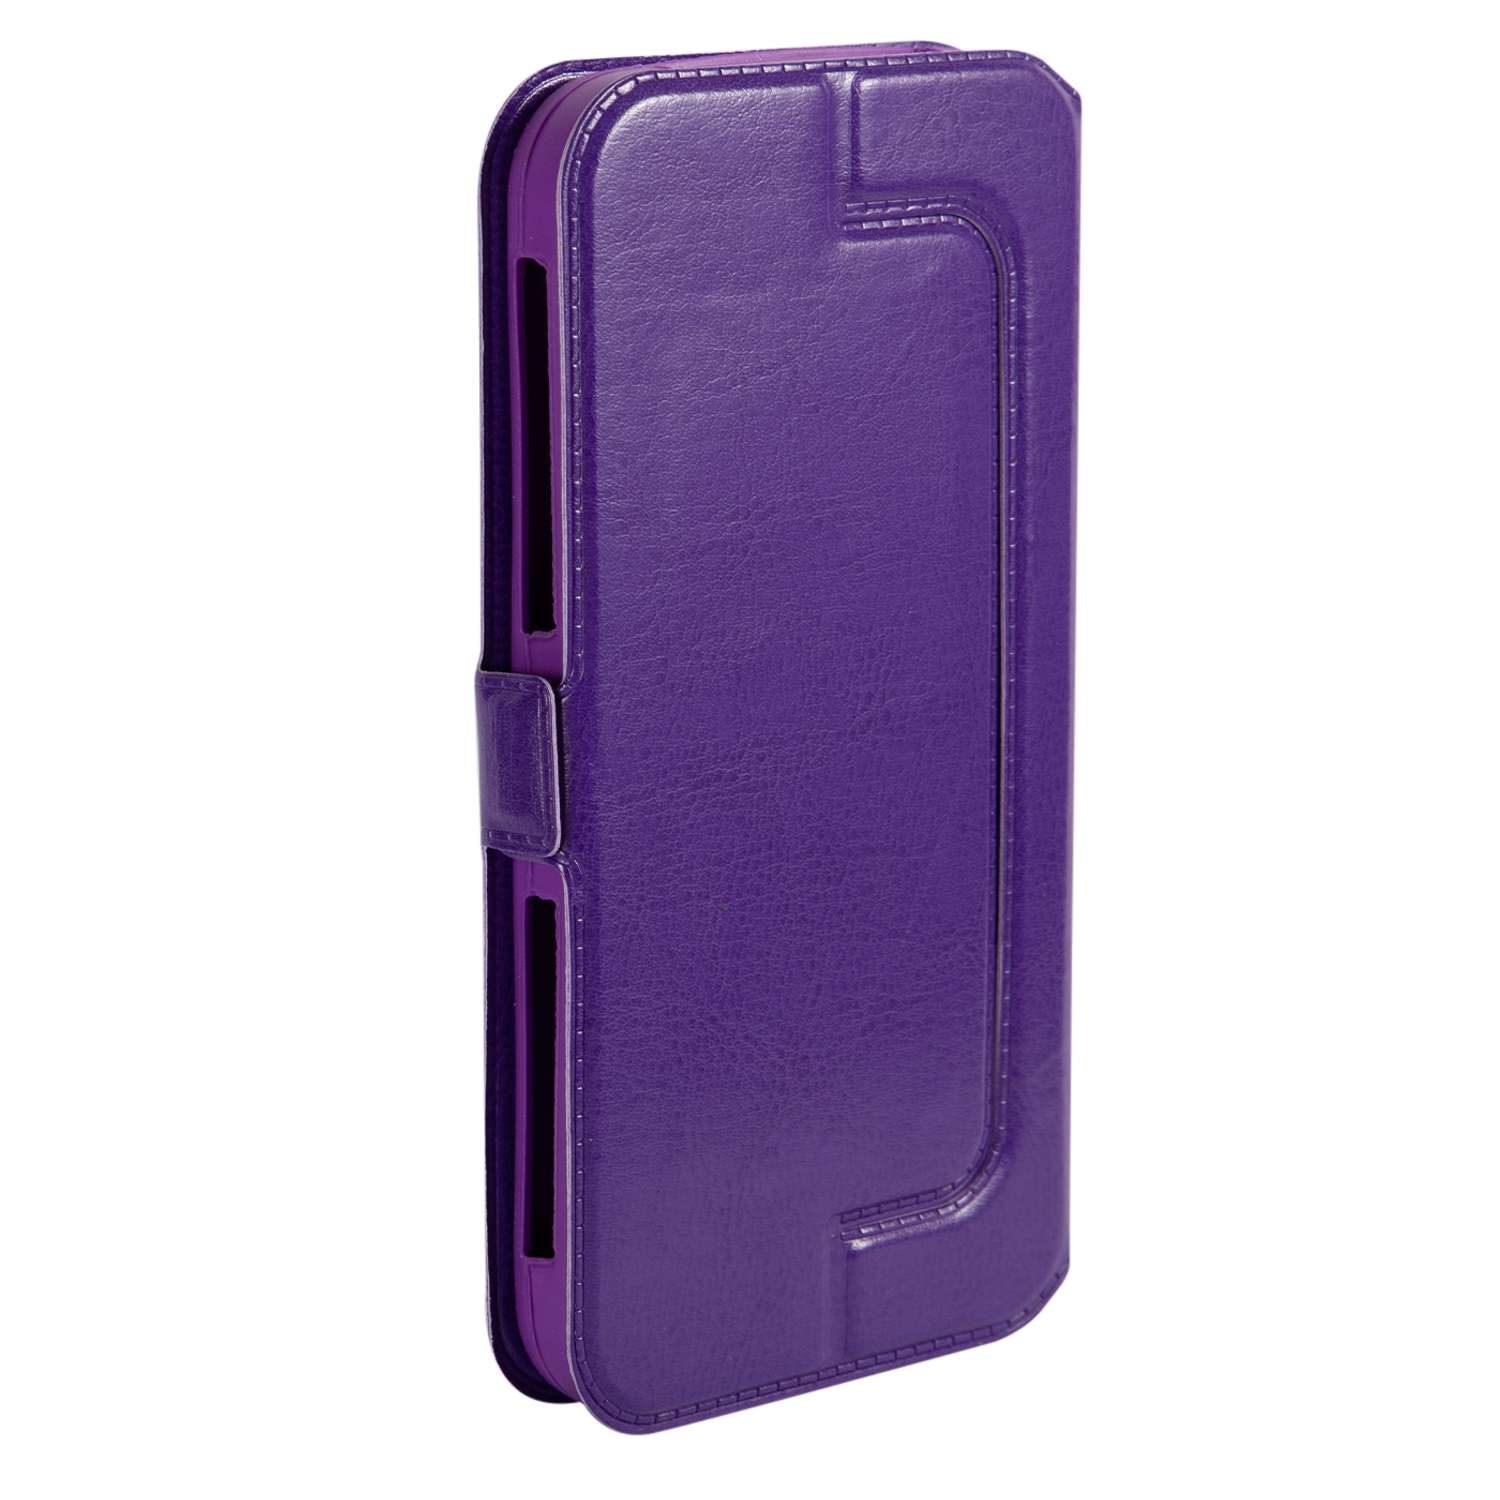 Чехол универсальный iBox Universal Slide для телефонов 4.2-5 дюймов фиолетовый - фото 4